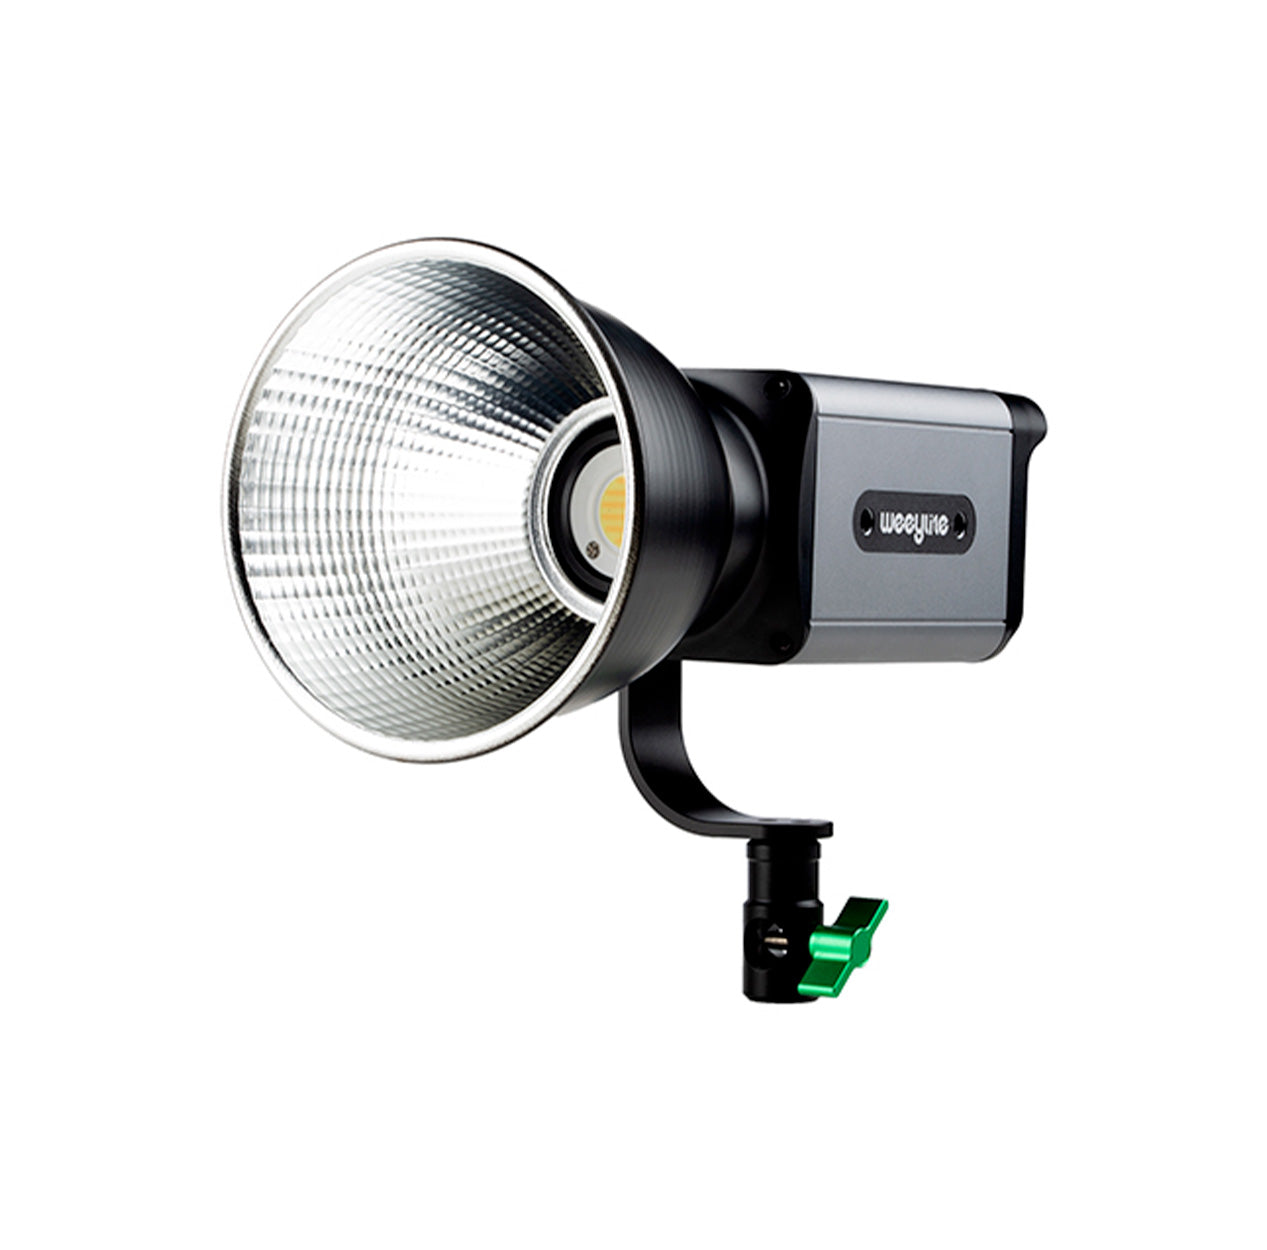 Weeylite ninja 200 Portable Bi-color COB LED Light Functional and Smart Control